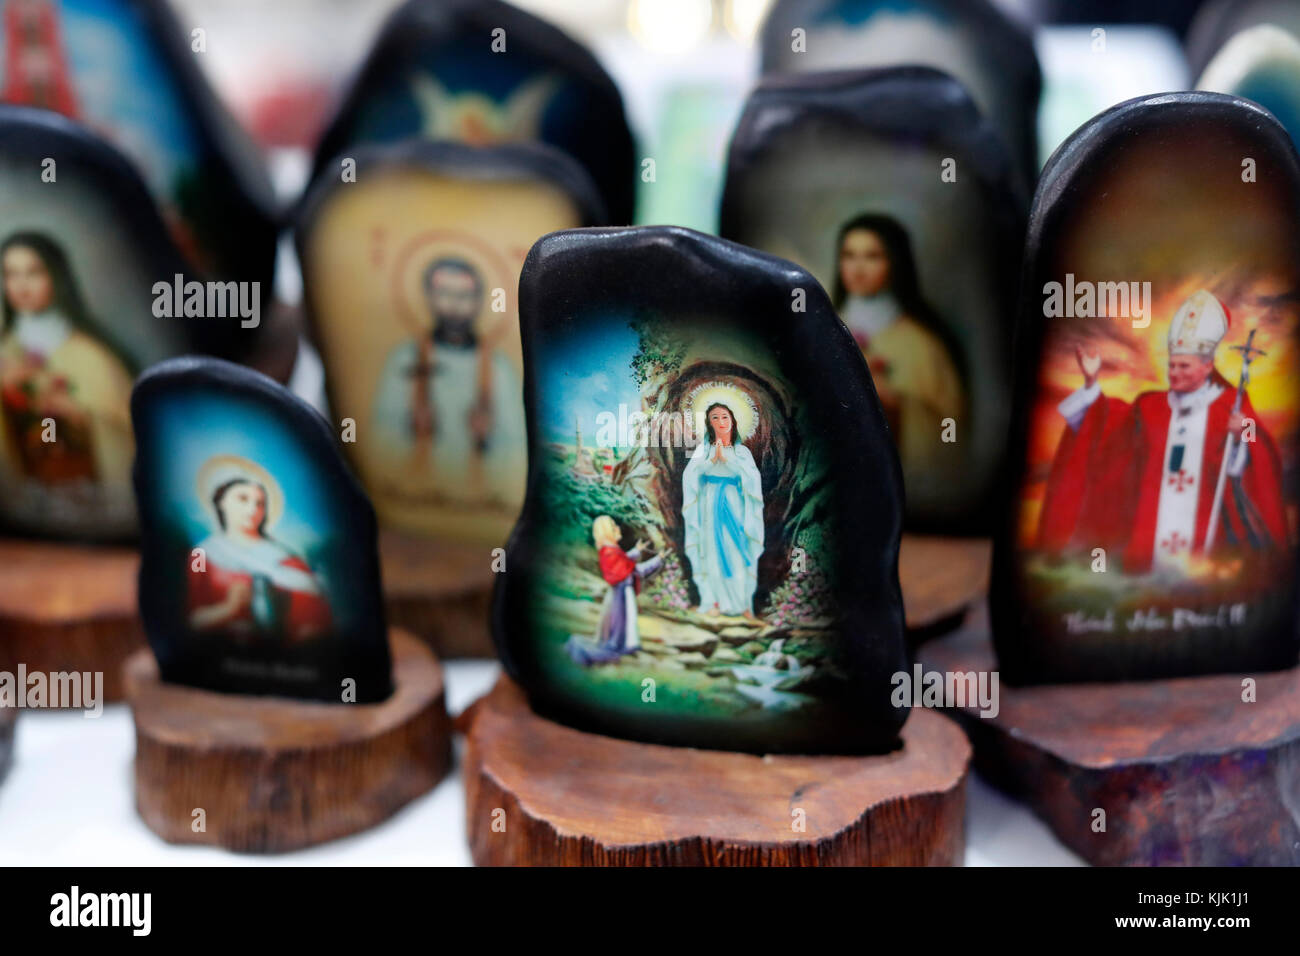 Magasin de vente d'articles religieux chrétiens. Sainte Vierge. Ho Chi Minh Ville. Le Vietnam. Banque D'Images